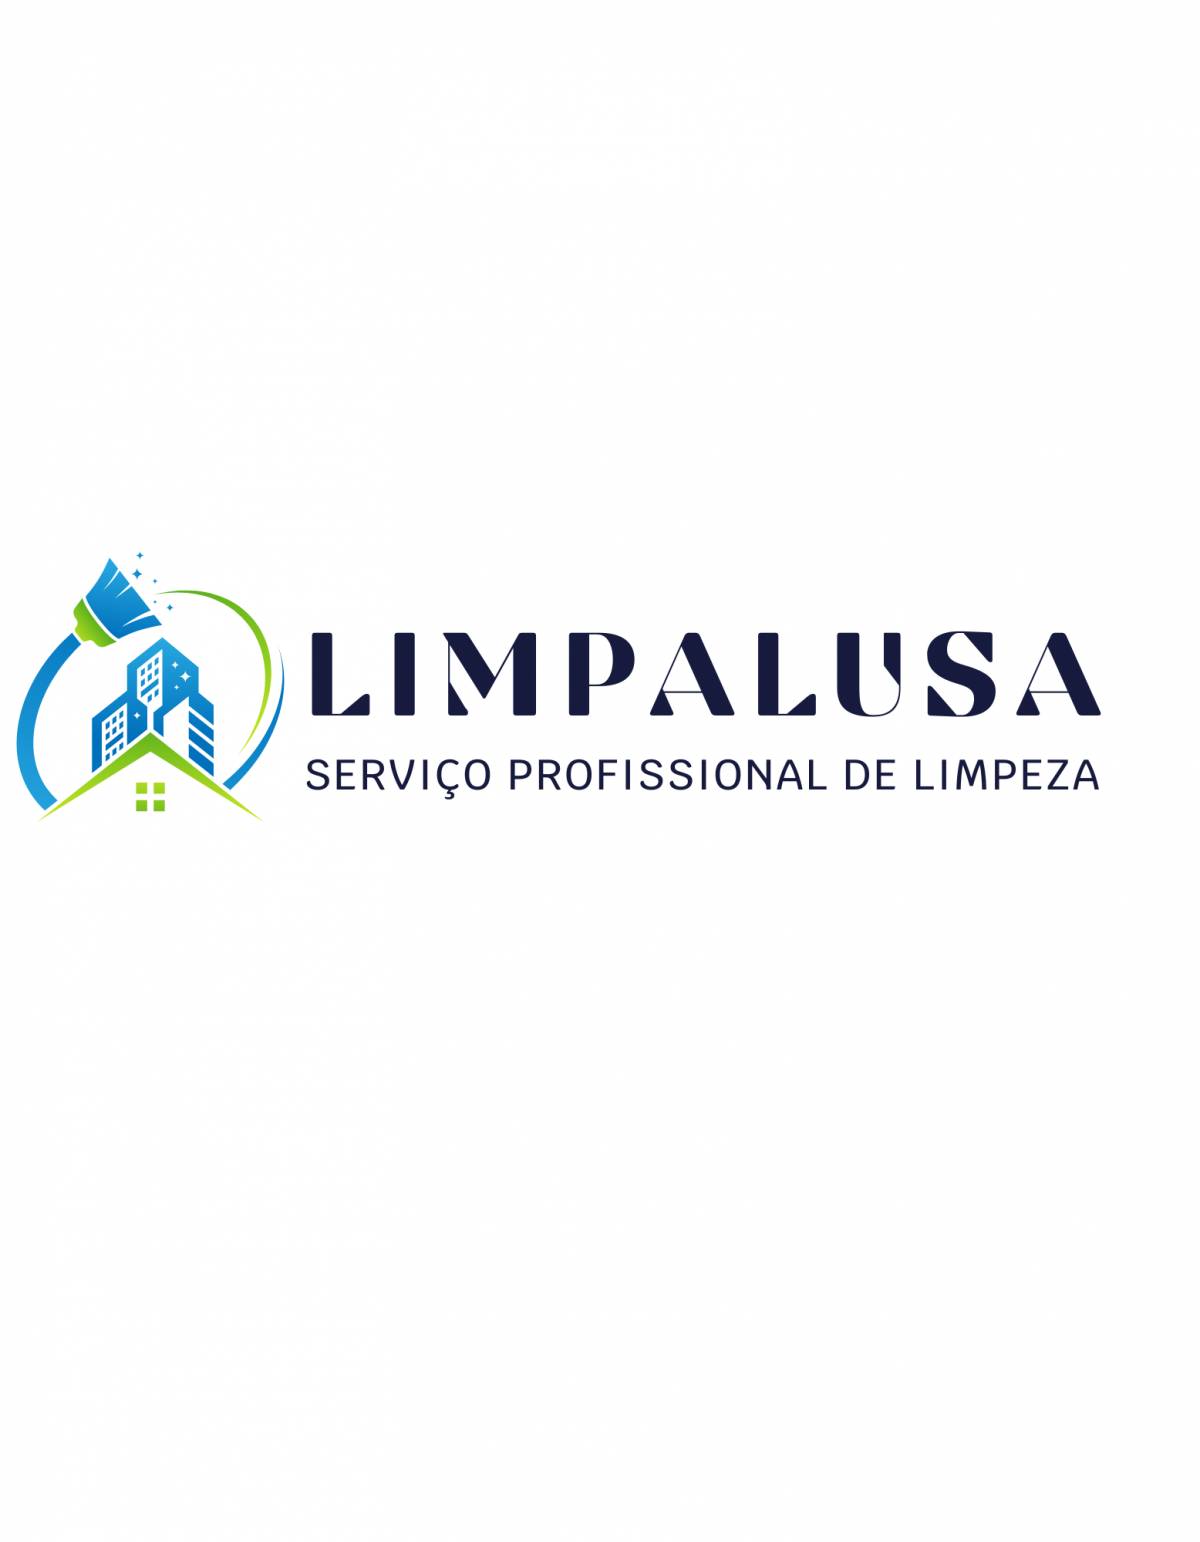 Limpalusa - Moita - Limpeza de Propriedade